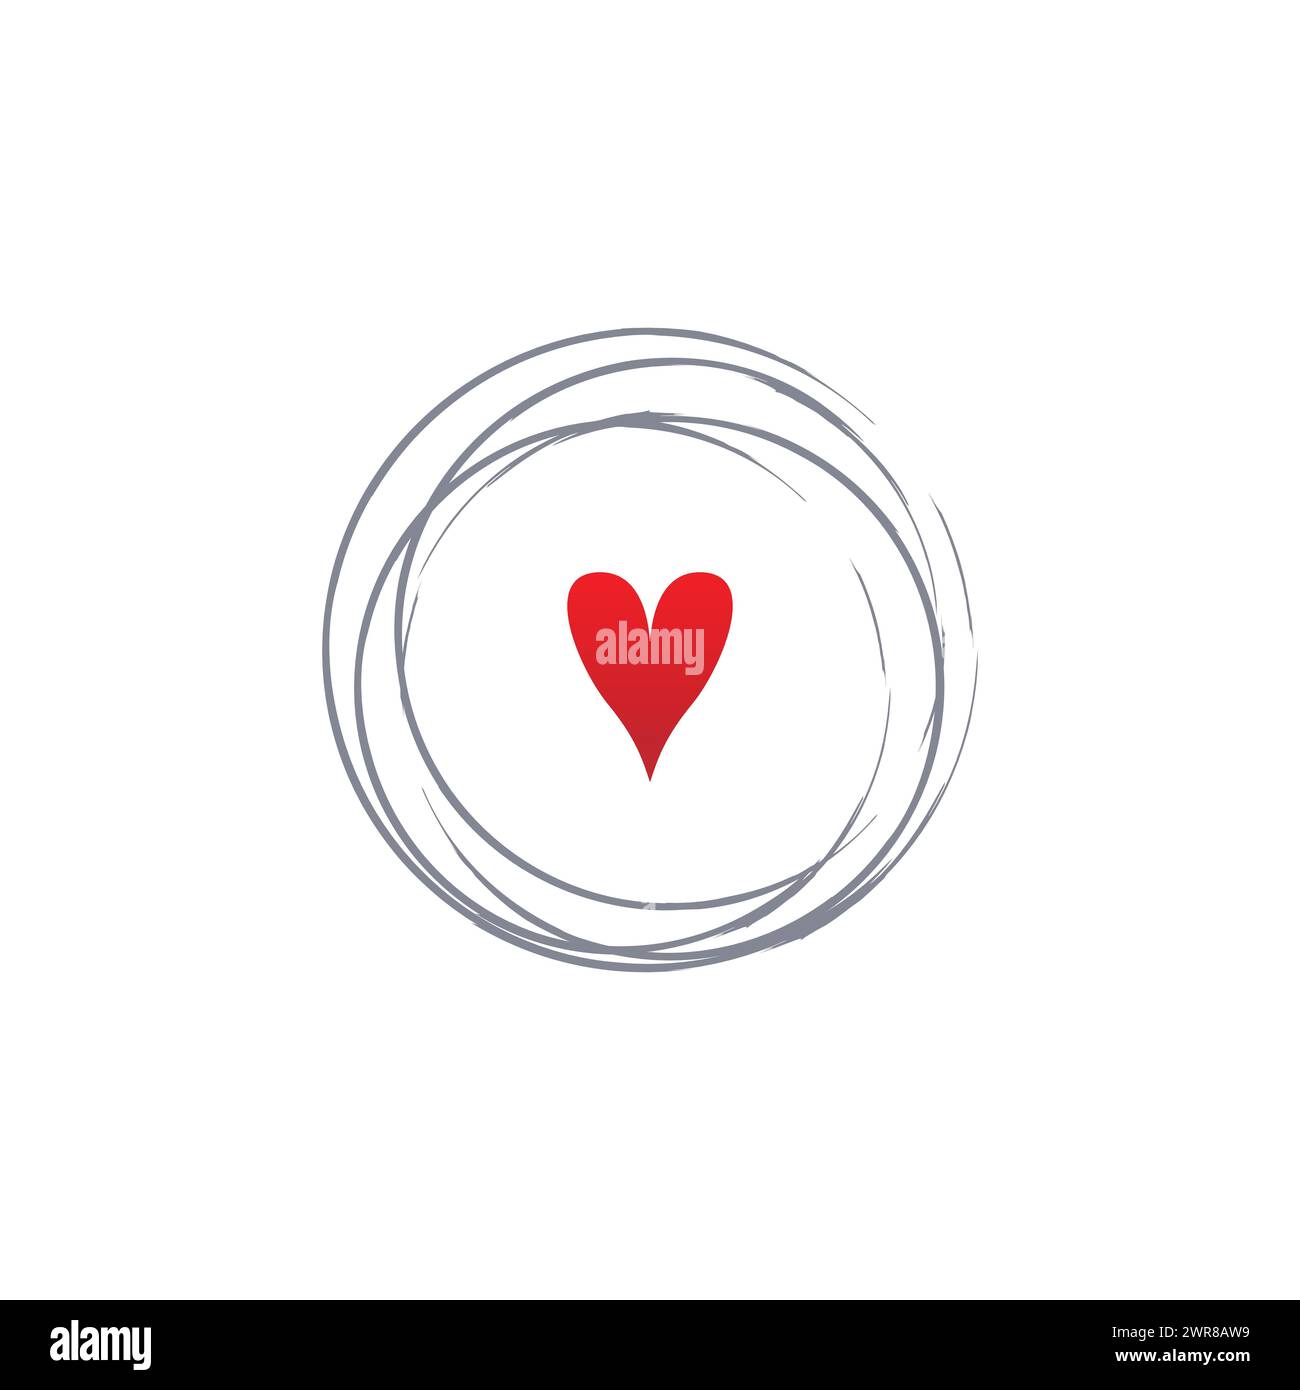 Abstract circular geometric line heart logo. Circular Abstract Lines with heart icon in the middle logo design vector Stock Vector